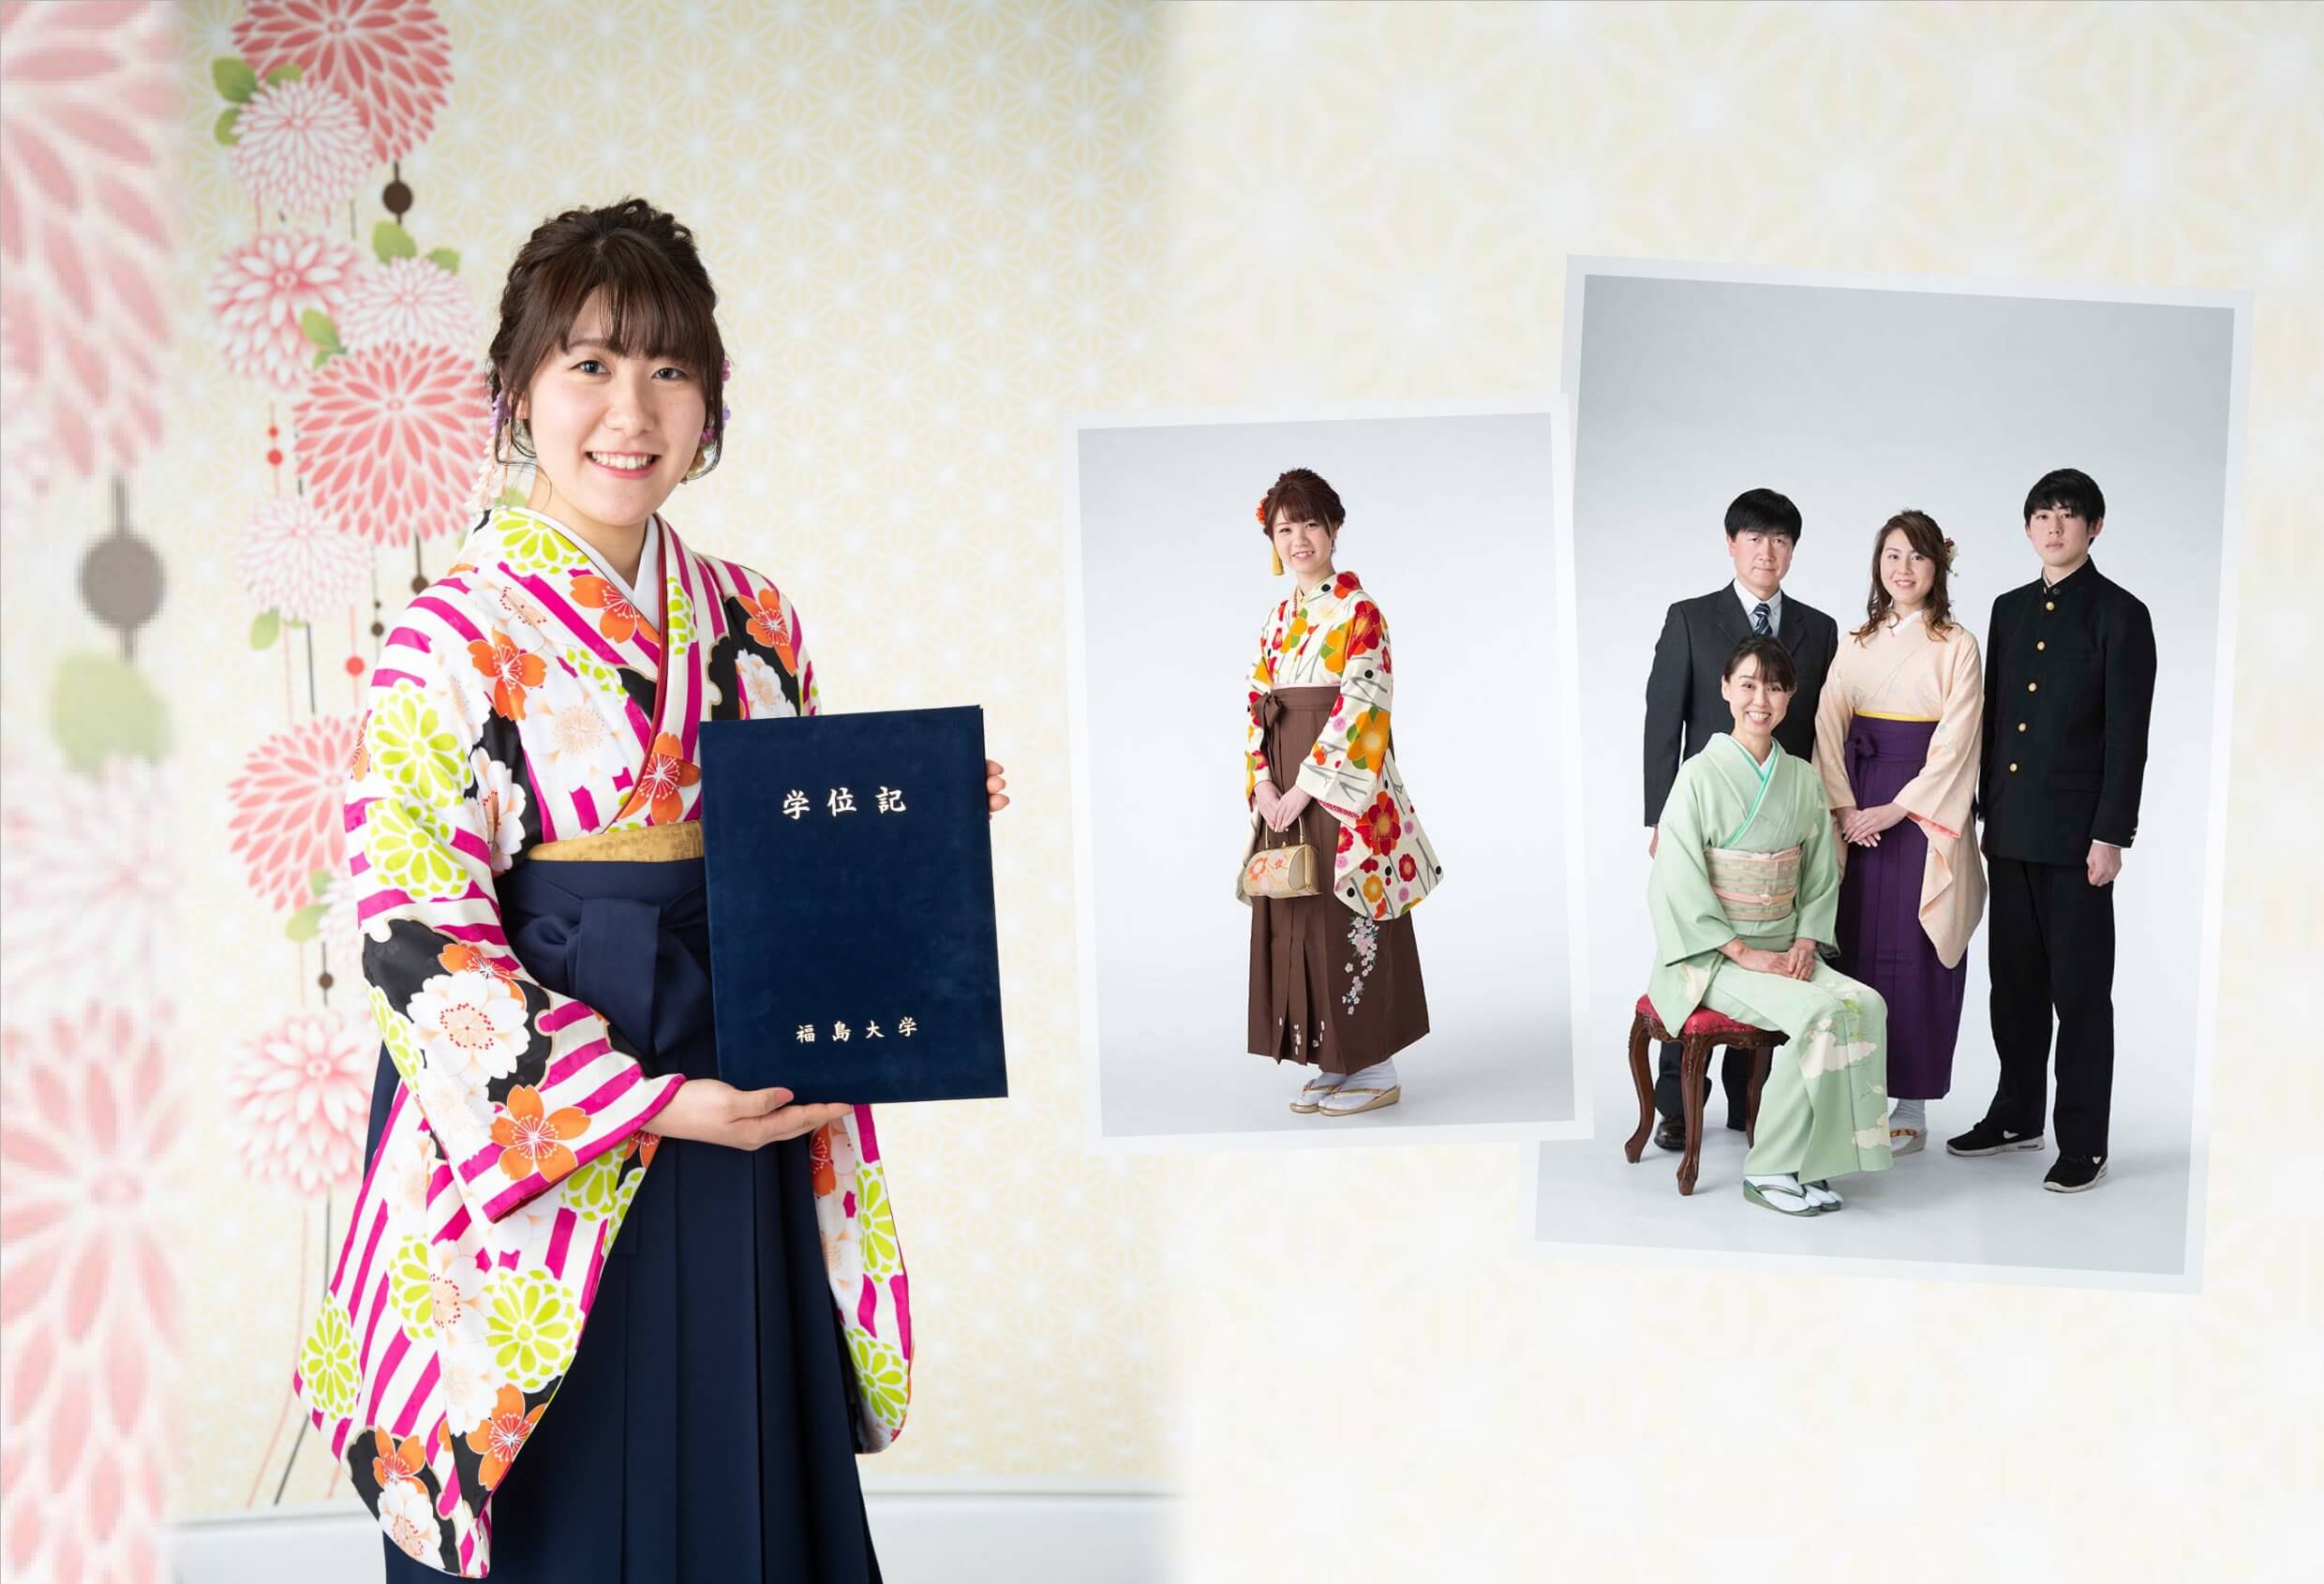 袴を着て卒業証書を持ち、卒業記念撮影をしている女性の写真（2枚）と、家族での卒業記念撮影